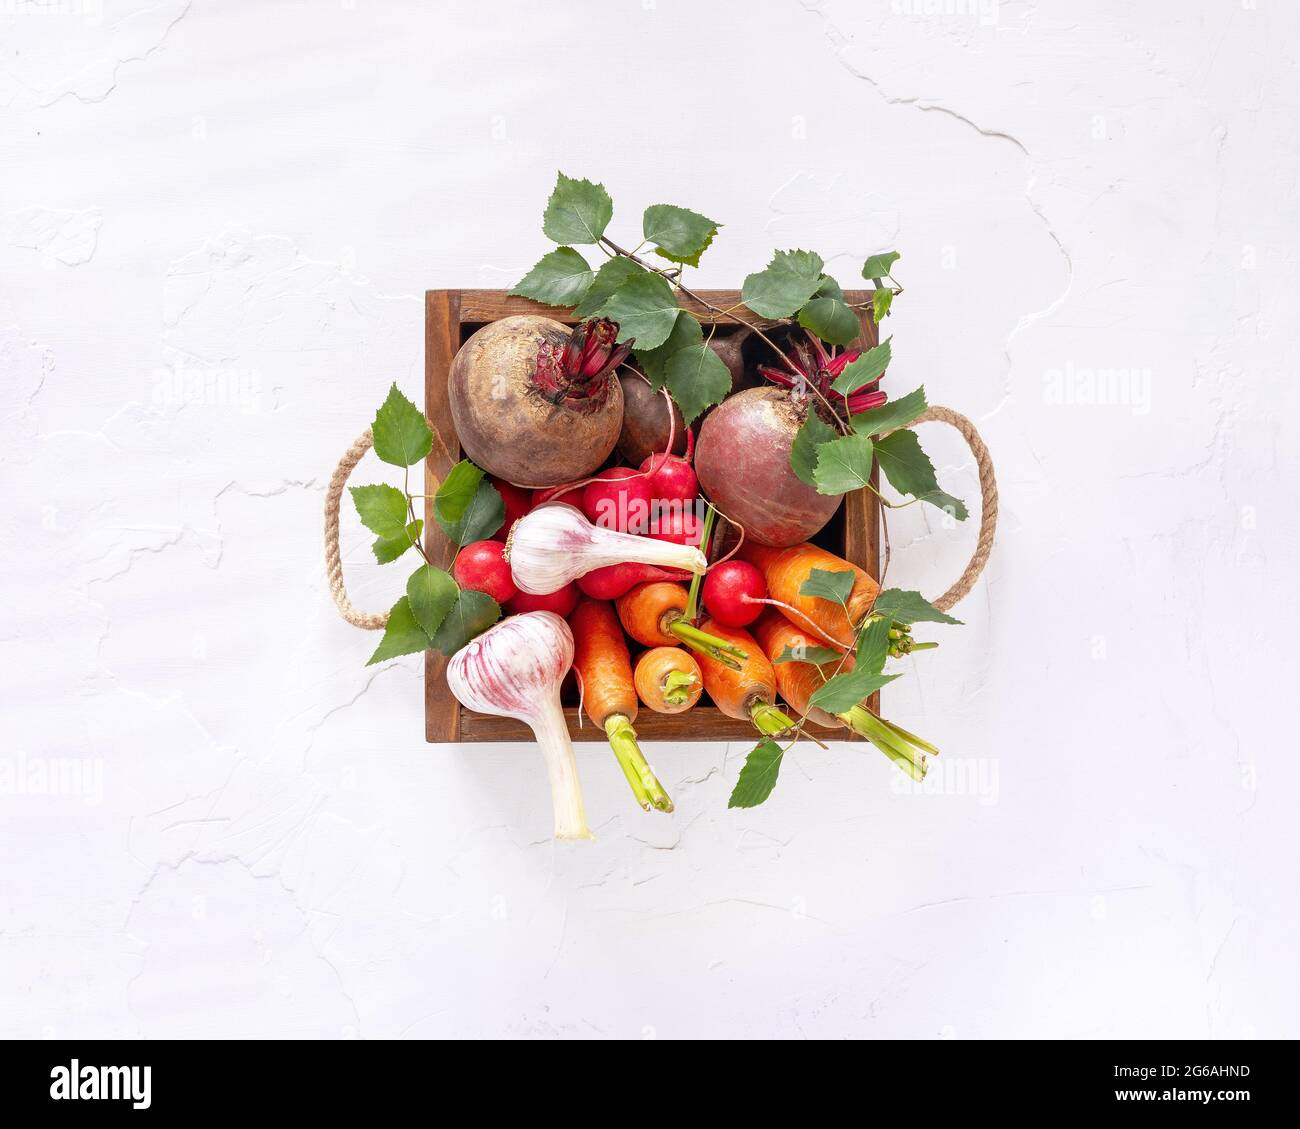 Sommer Verkauf von saisonalem Gemüse auf dem lokalen Markt. Bio-Gemüse: Karotten, Kartoffeln, Rüben, Radieschen und Knoblauch in einer braunen Holzkiste Stockfoto